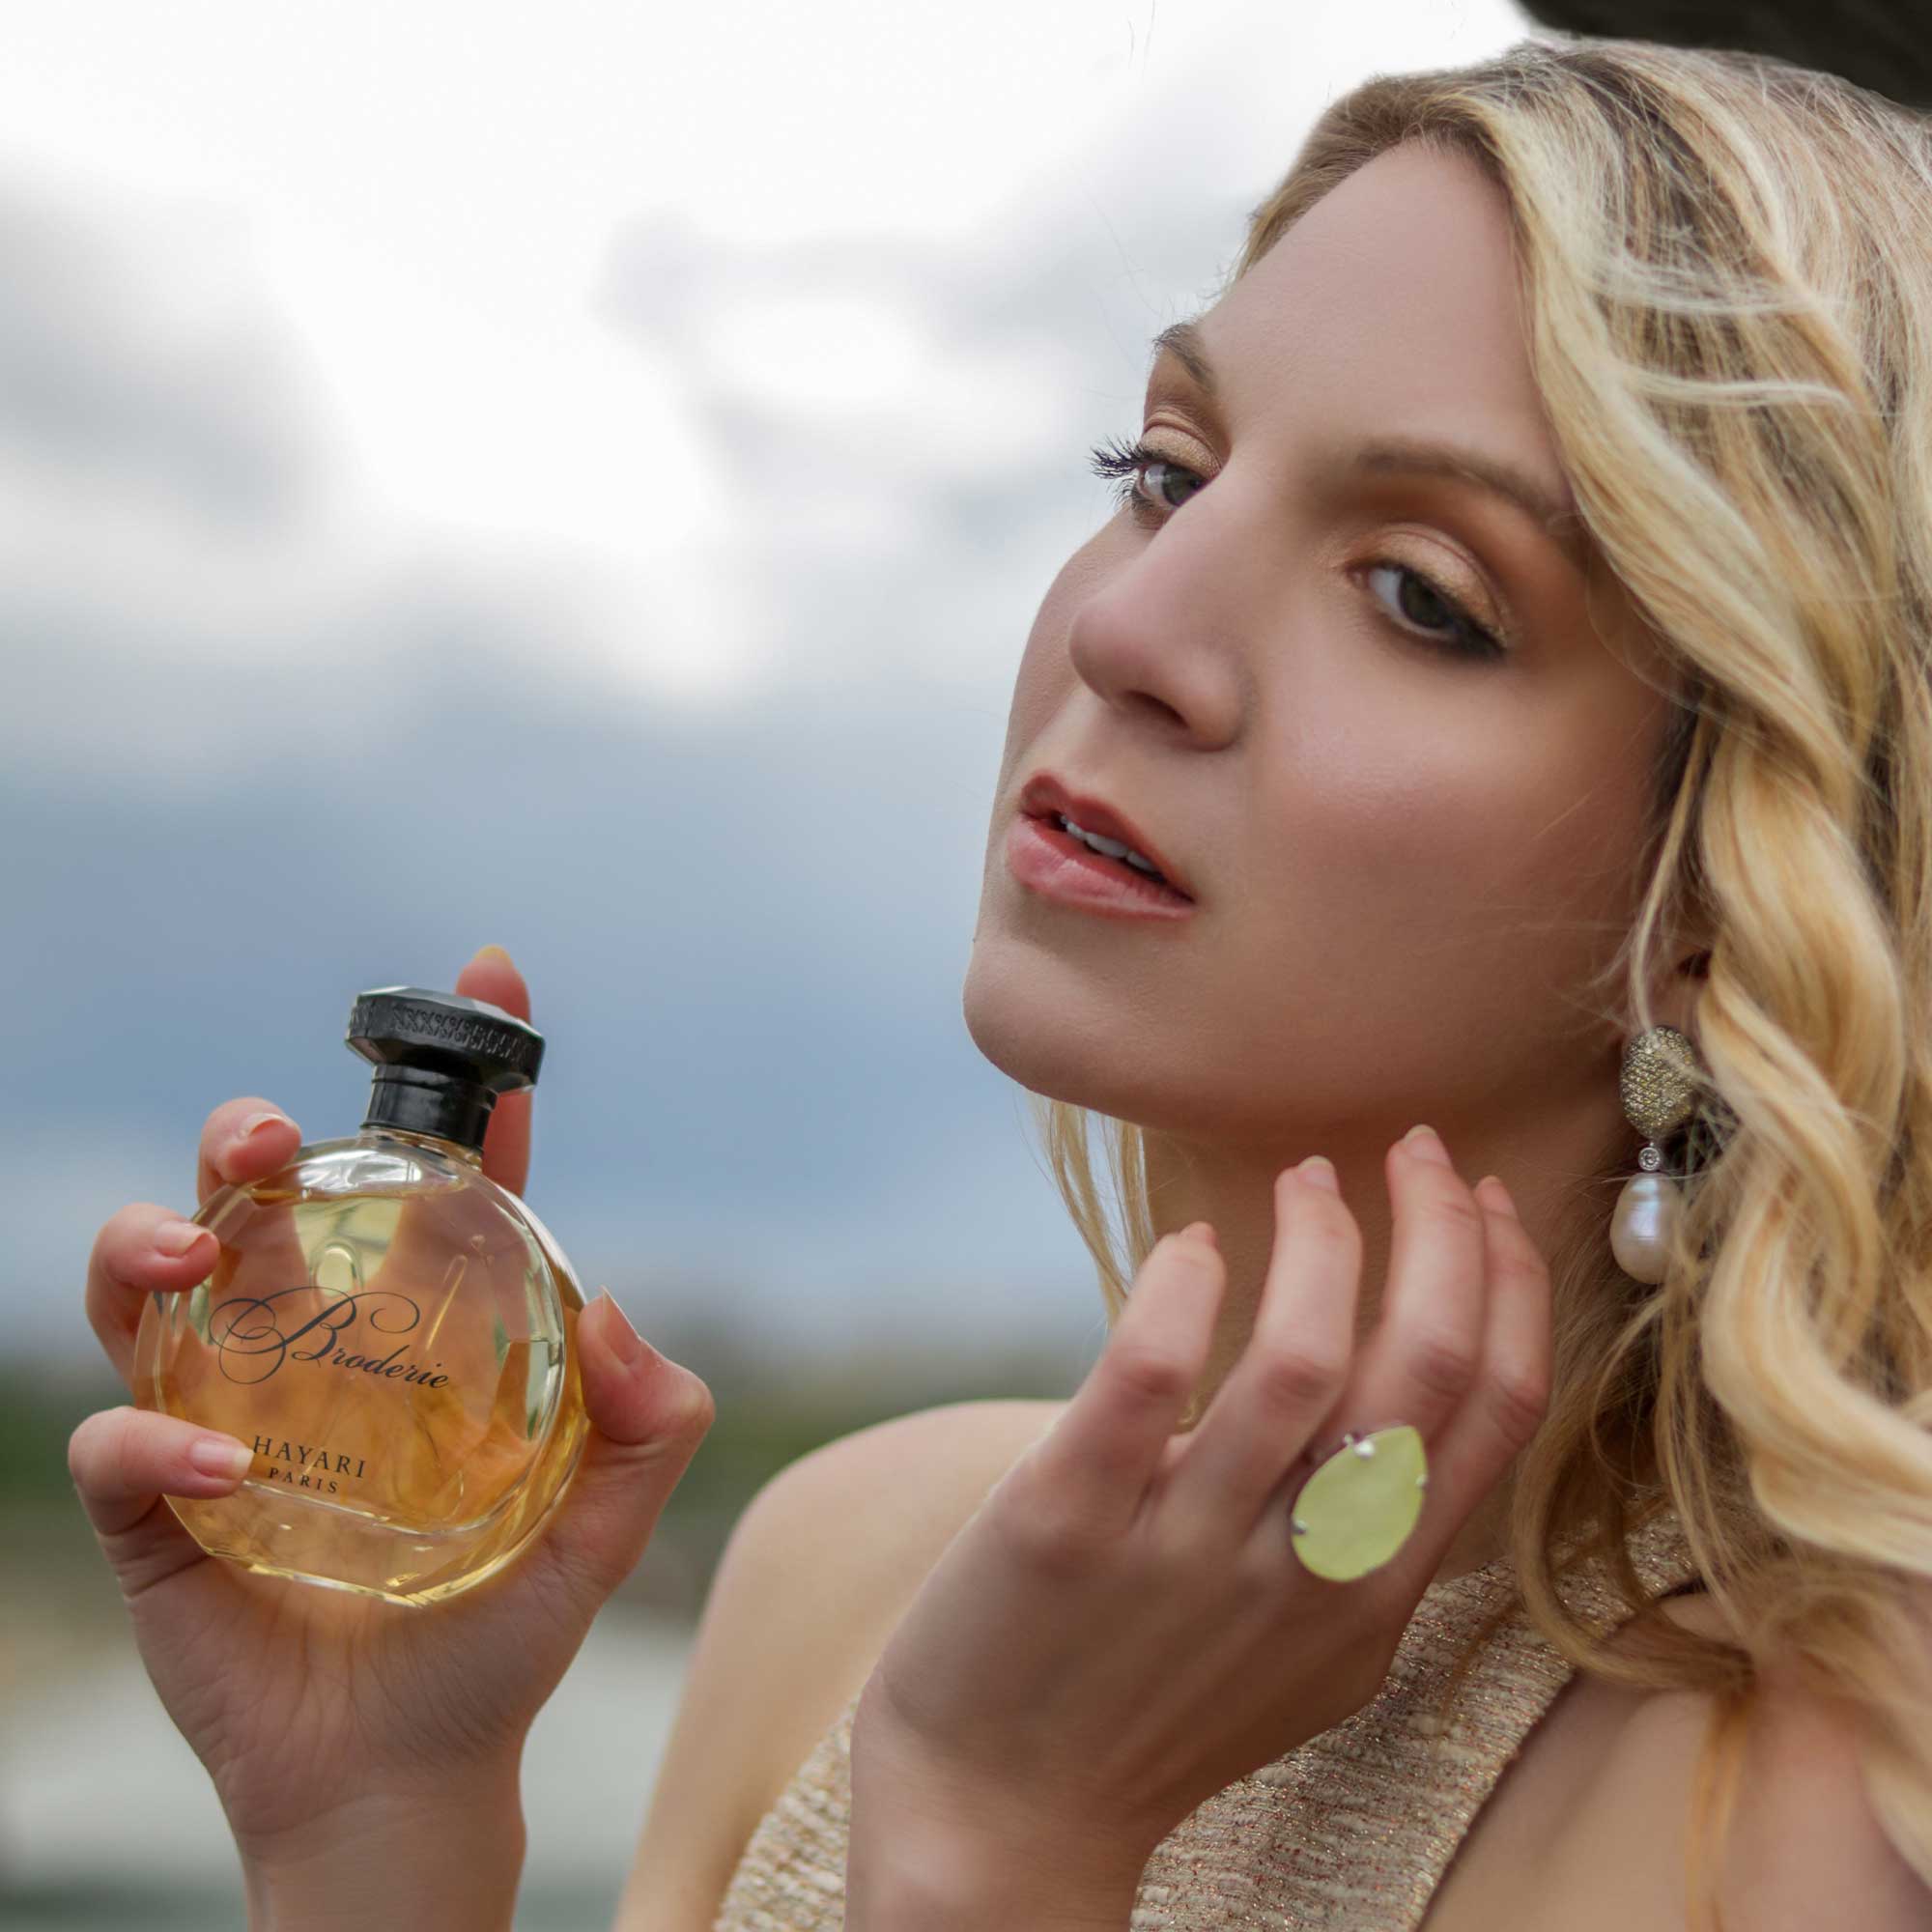 hayari paris women perfumes